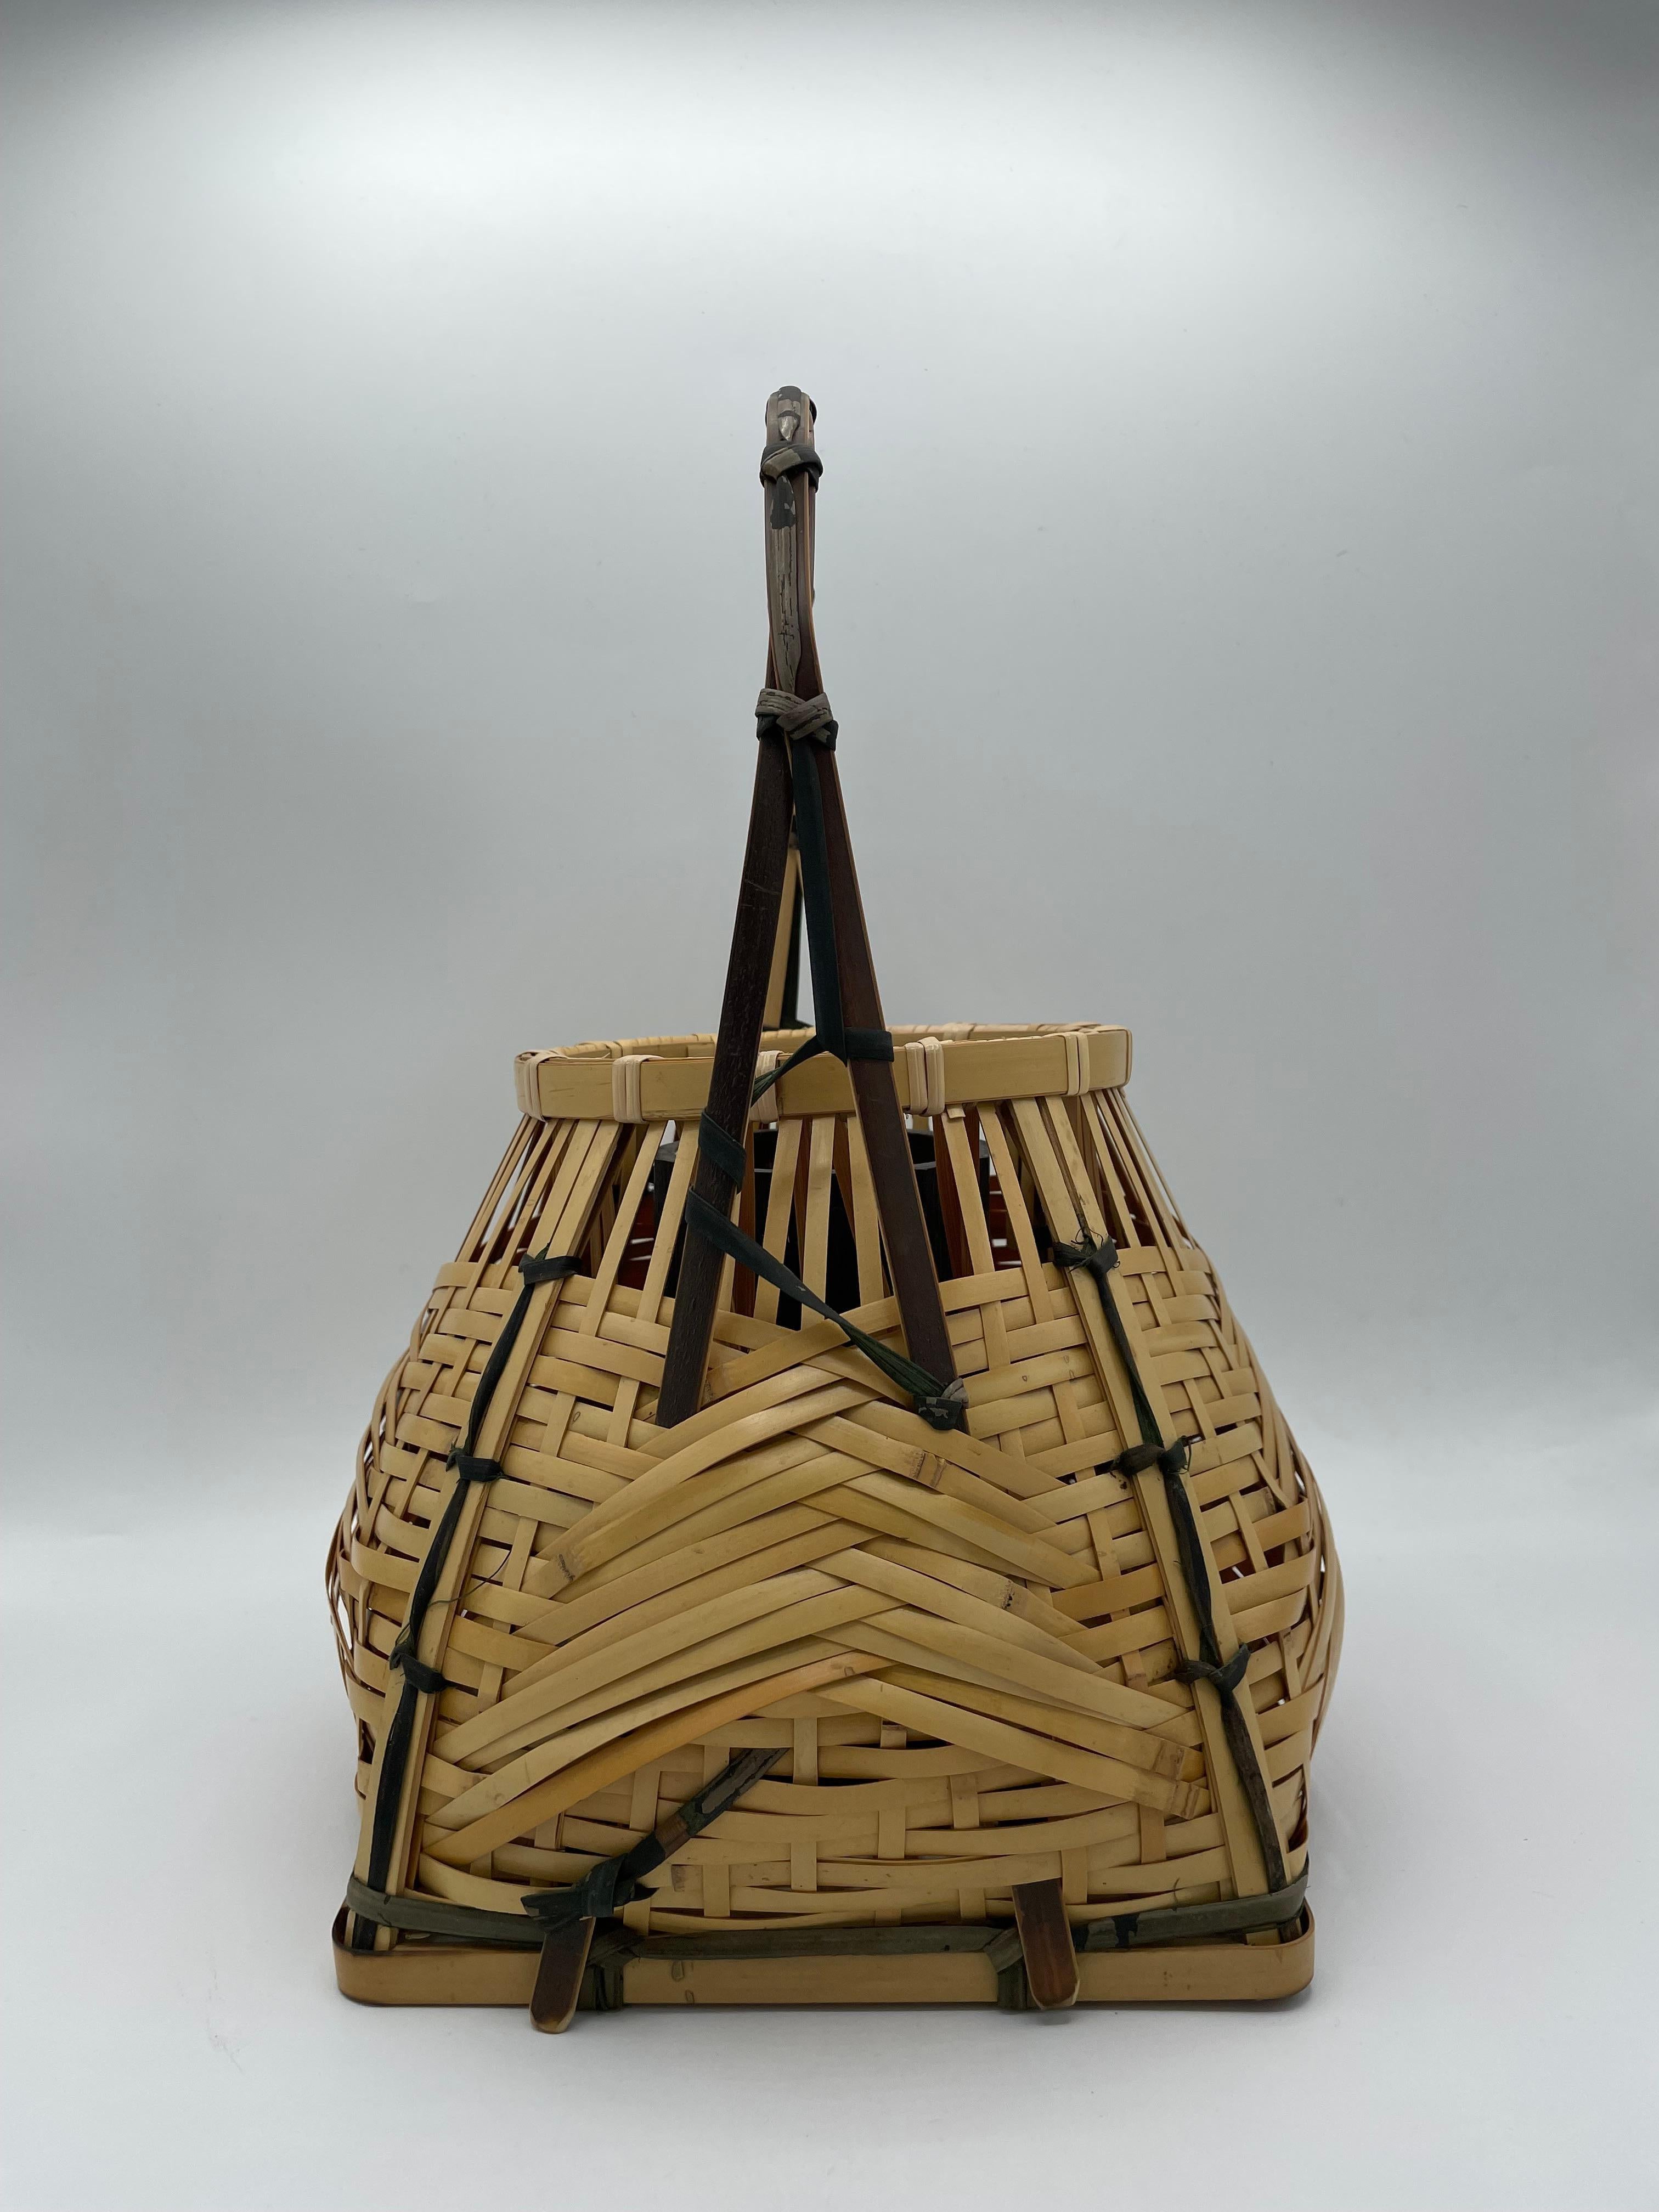 Dies ist ein Bambuskorb namens 'Souzen kago'.
Souzen kago wurde von Souzen HISADA gemocht. Er ist berühmt für seine Form, die unten ein Rechteck und oben einen Kreis darstellt. 
Dieser Korb wurde von Chikusei hergestellt. 

Sie wurde für die